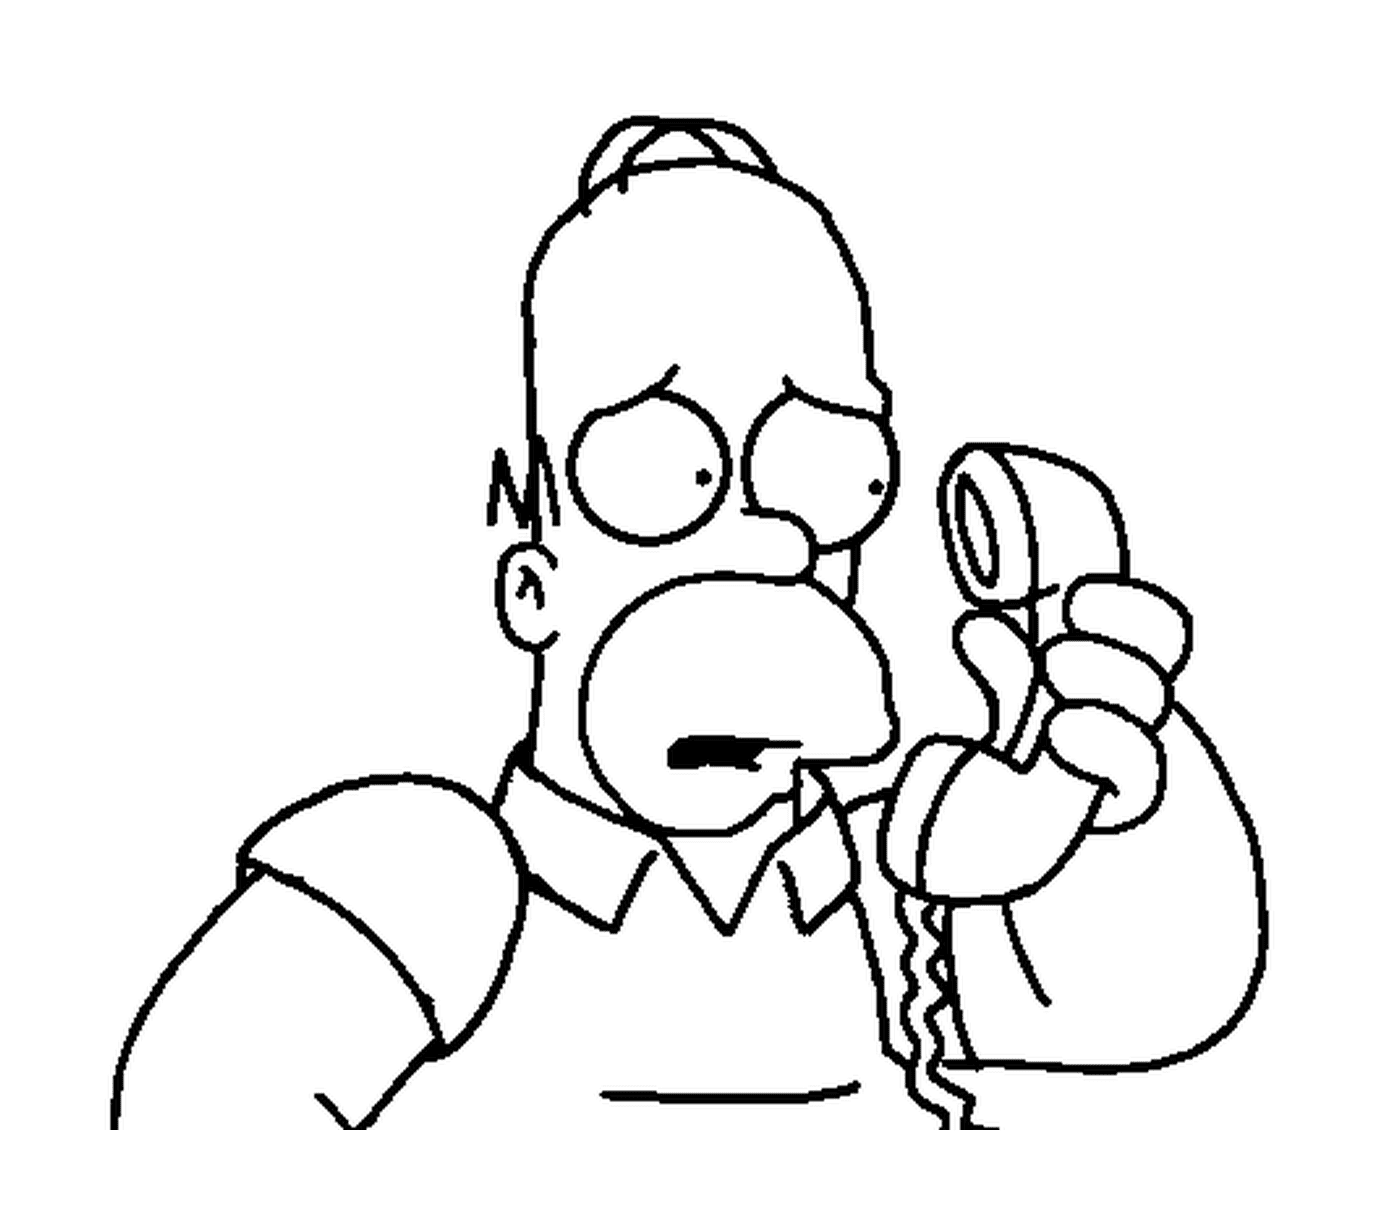  霍默在电话里担心 